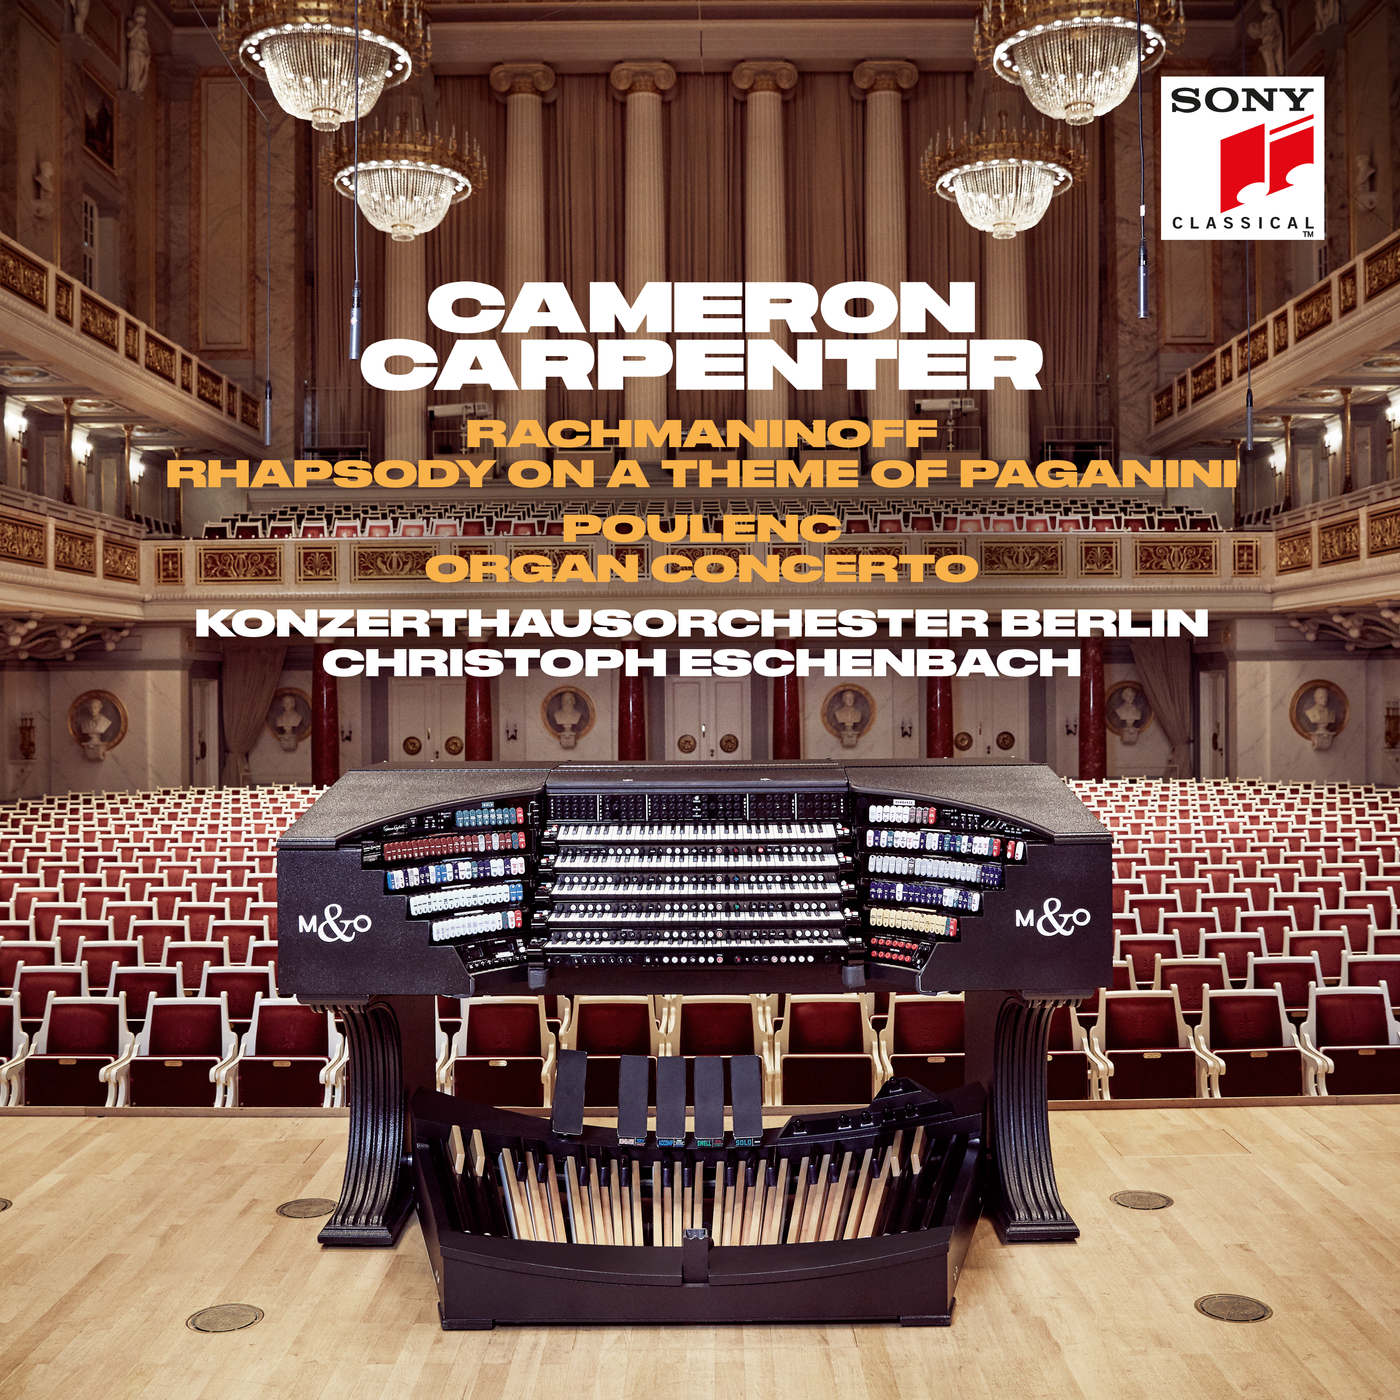 Concerto for Organ, Strings & Timpani in G Minor, FP 93:VI. Tempo de l'Allegro initial